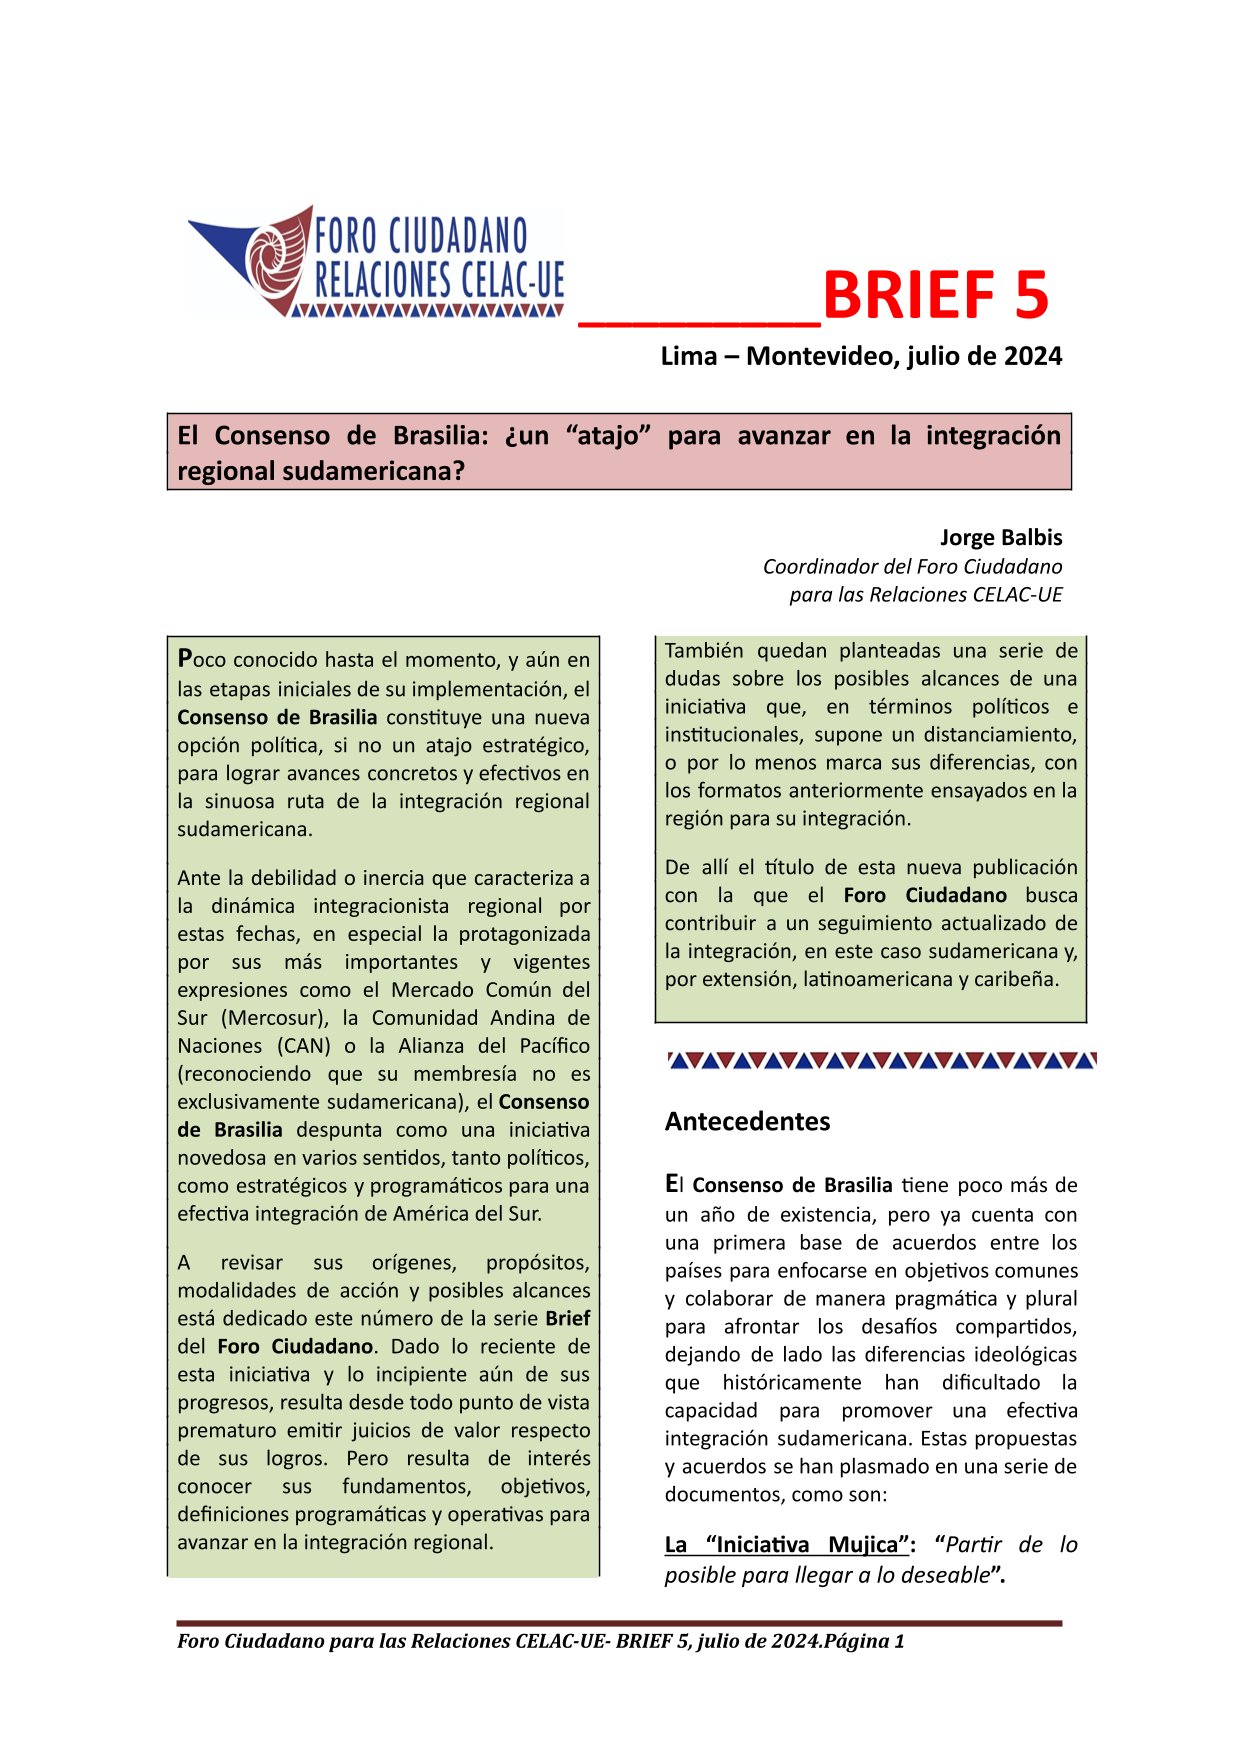 BRIEF 5 – «El Consenso de Brasilia: ¿un «atajo» para avanzar en la integración regional sudamericana?», julio 2024,